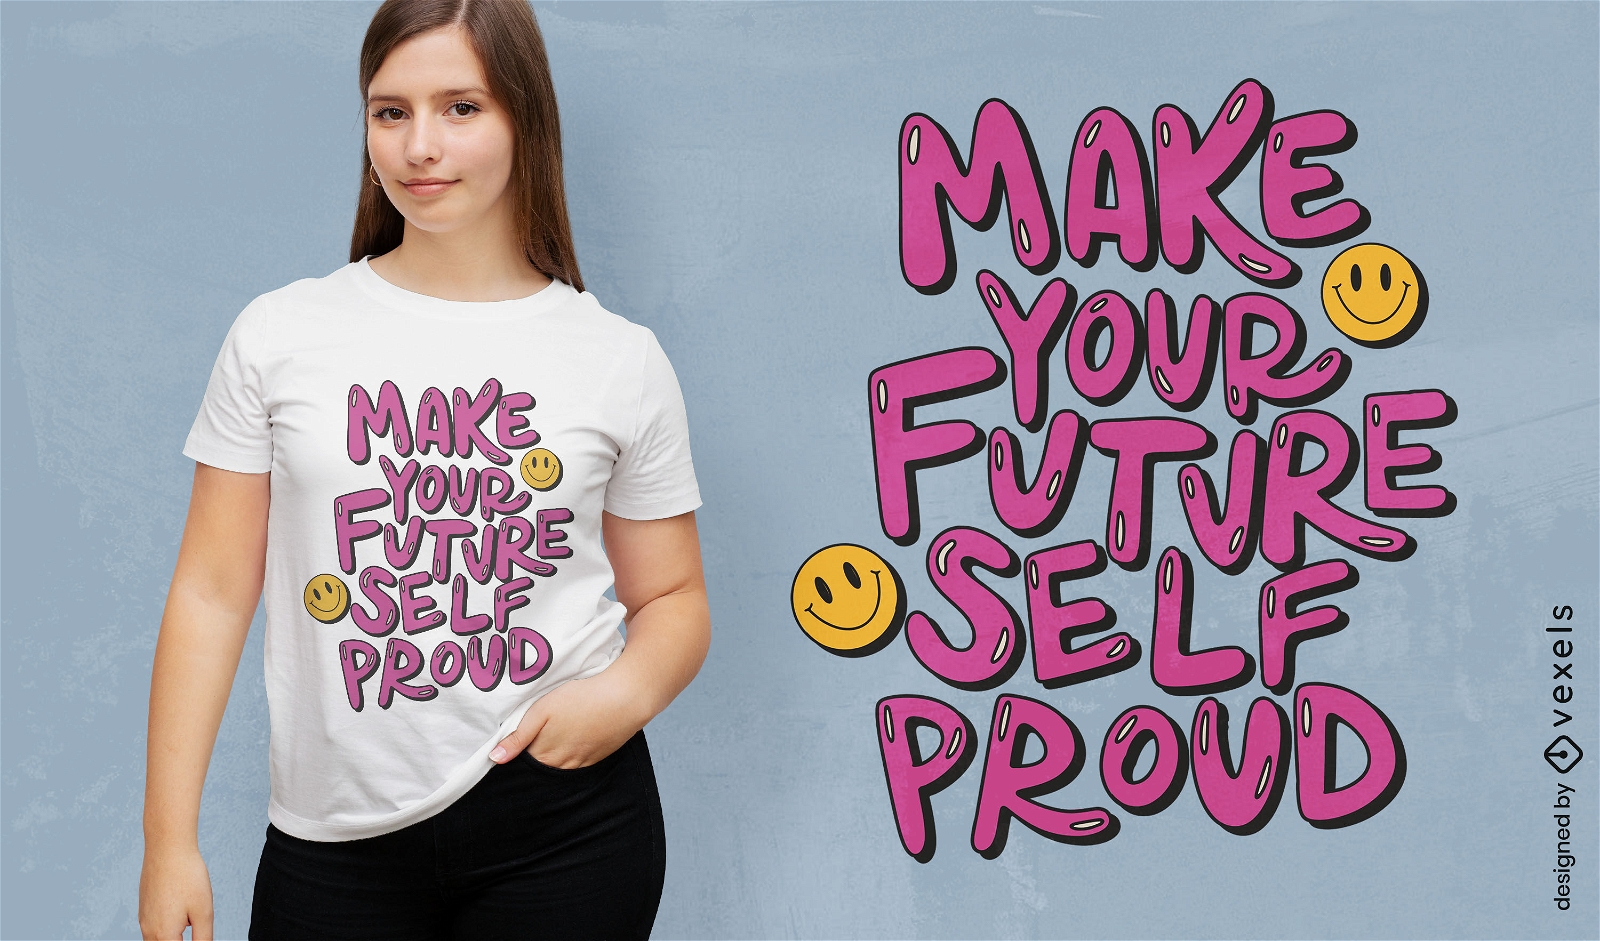 Proud future self quote t-shirt design